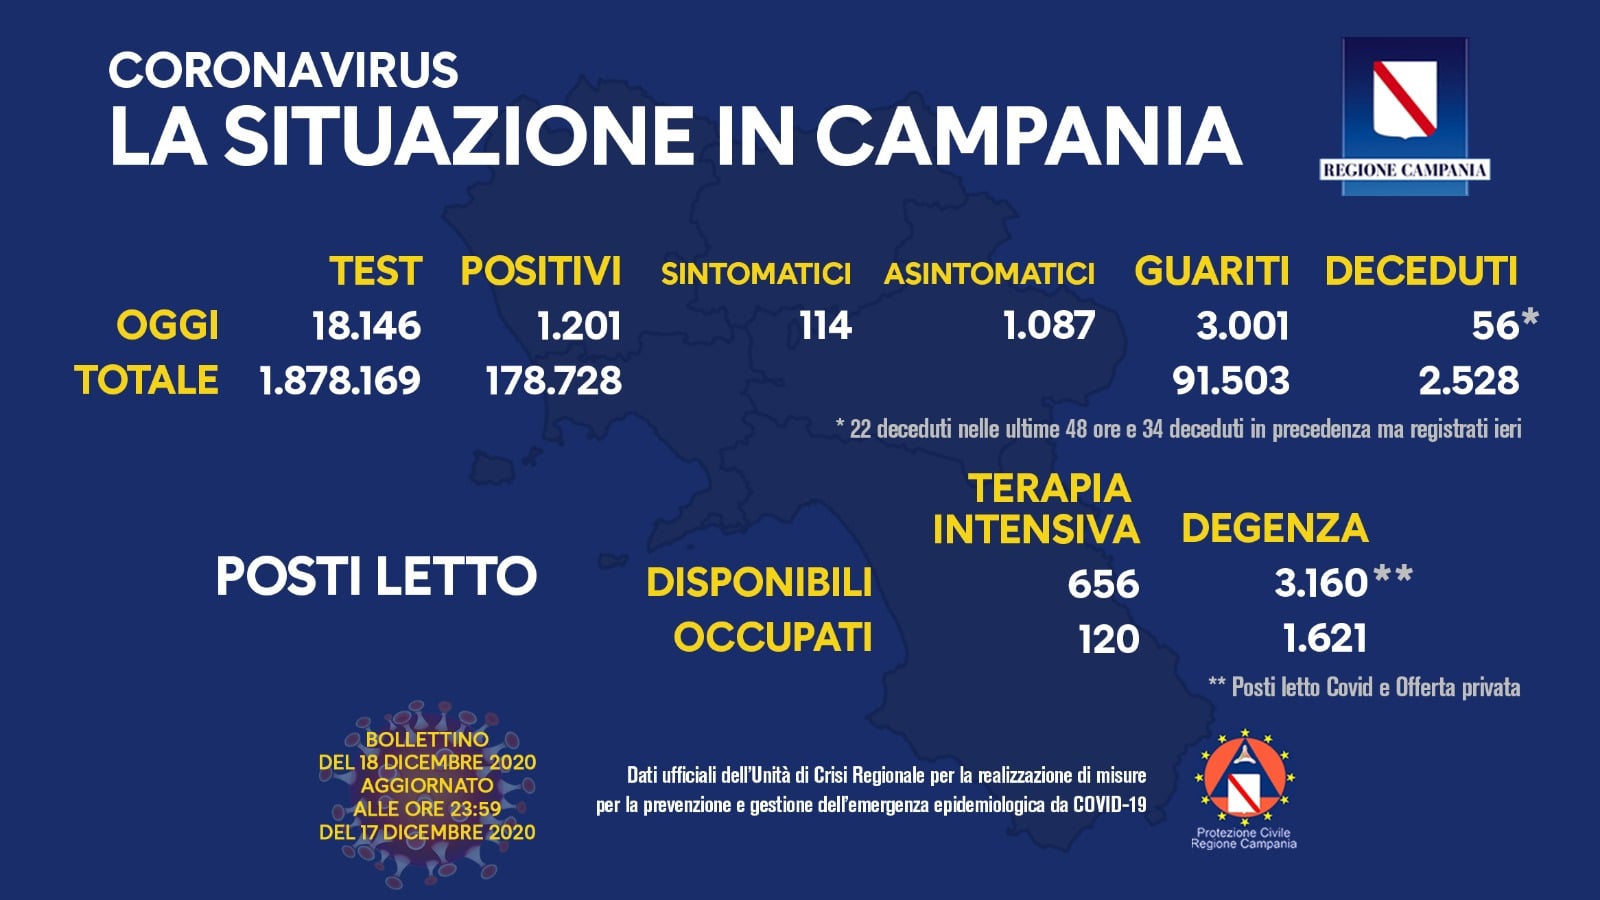 Coronavirus in Campania, i dati di oggi: 1.201 nuovi positivi e 3.001 guariti